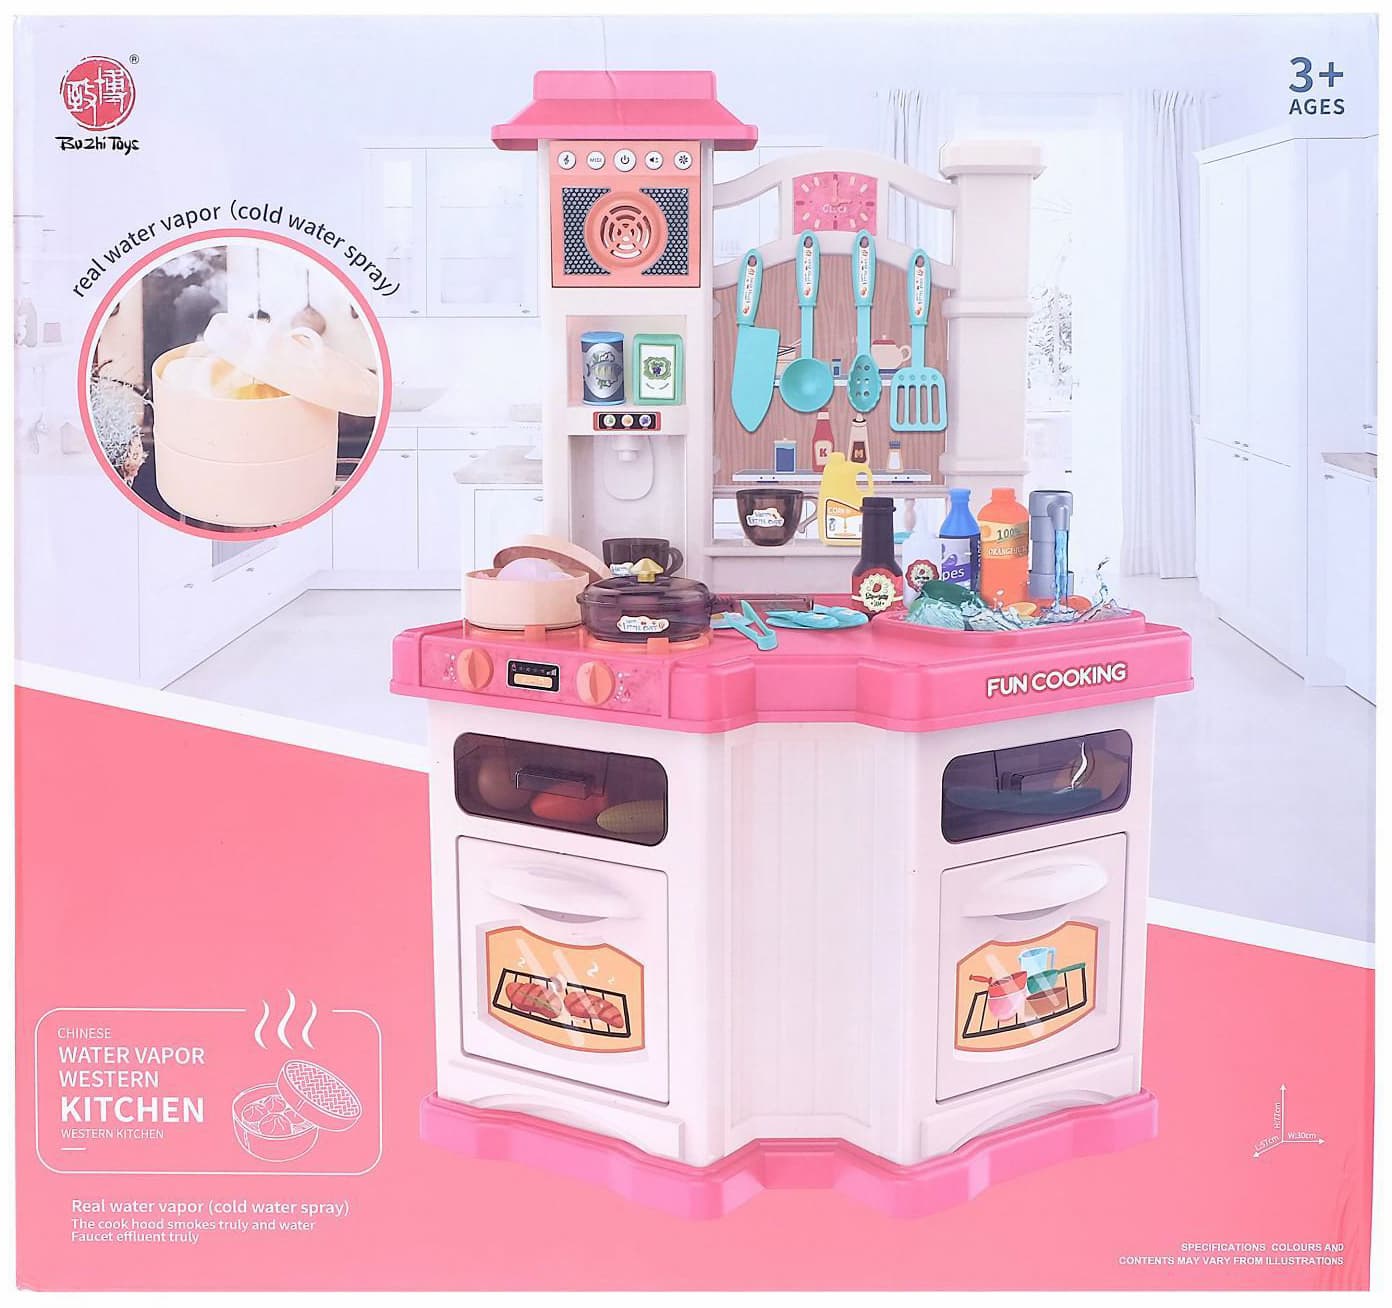 Детская игровая кухня Fun cooking «Шеф-повар» 848-B, 44 аксессуара, высота 77 см.  свет, звук, бежит вода из крана / Розовая